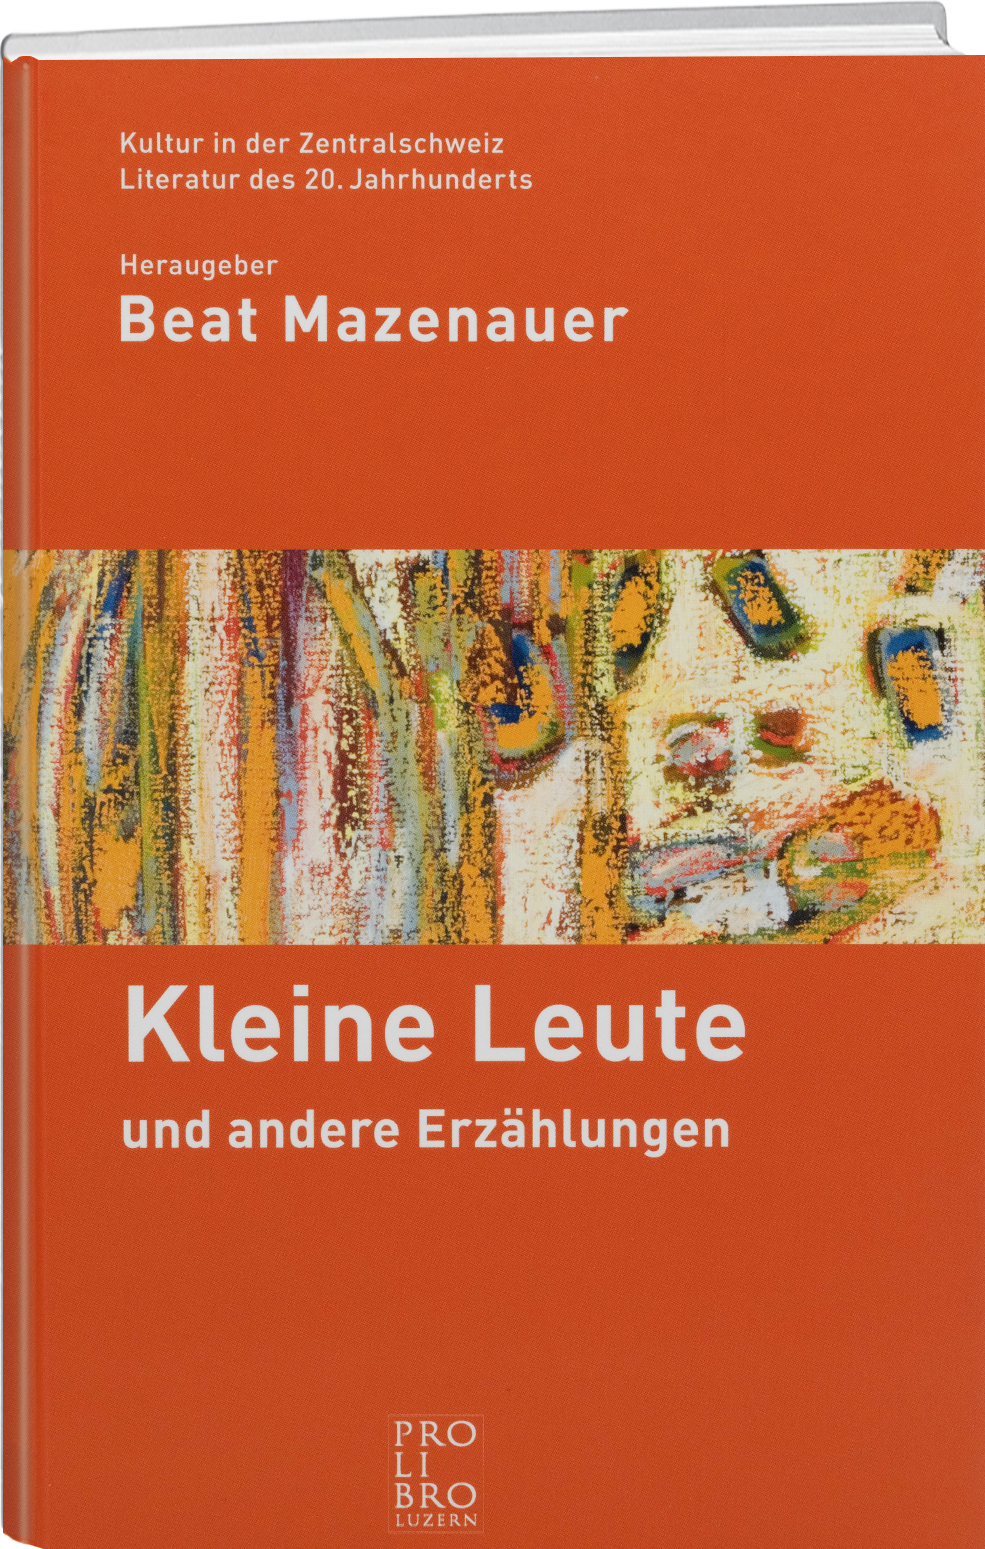 Beat Mazenauer: Kleine Leute - prolibro.ch